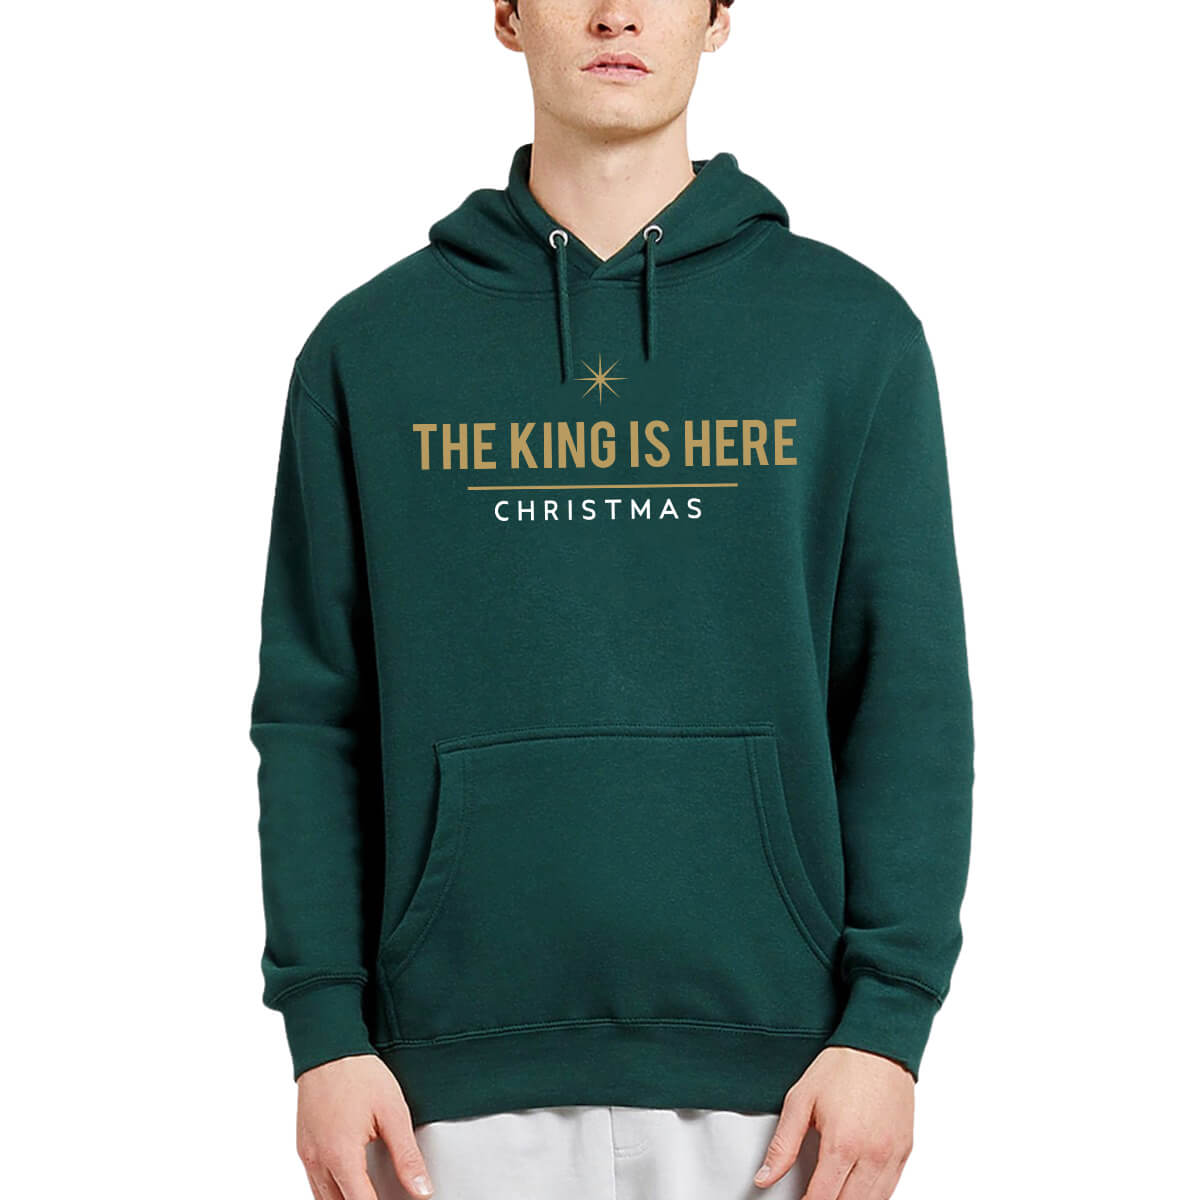 The King Is Here Christmas Men's Sweatshirt Hoodie